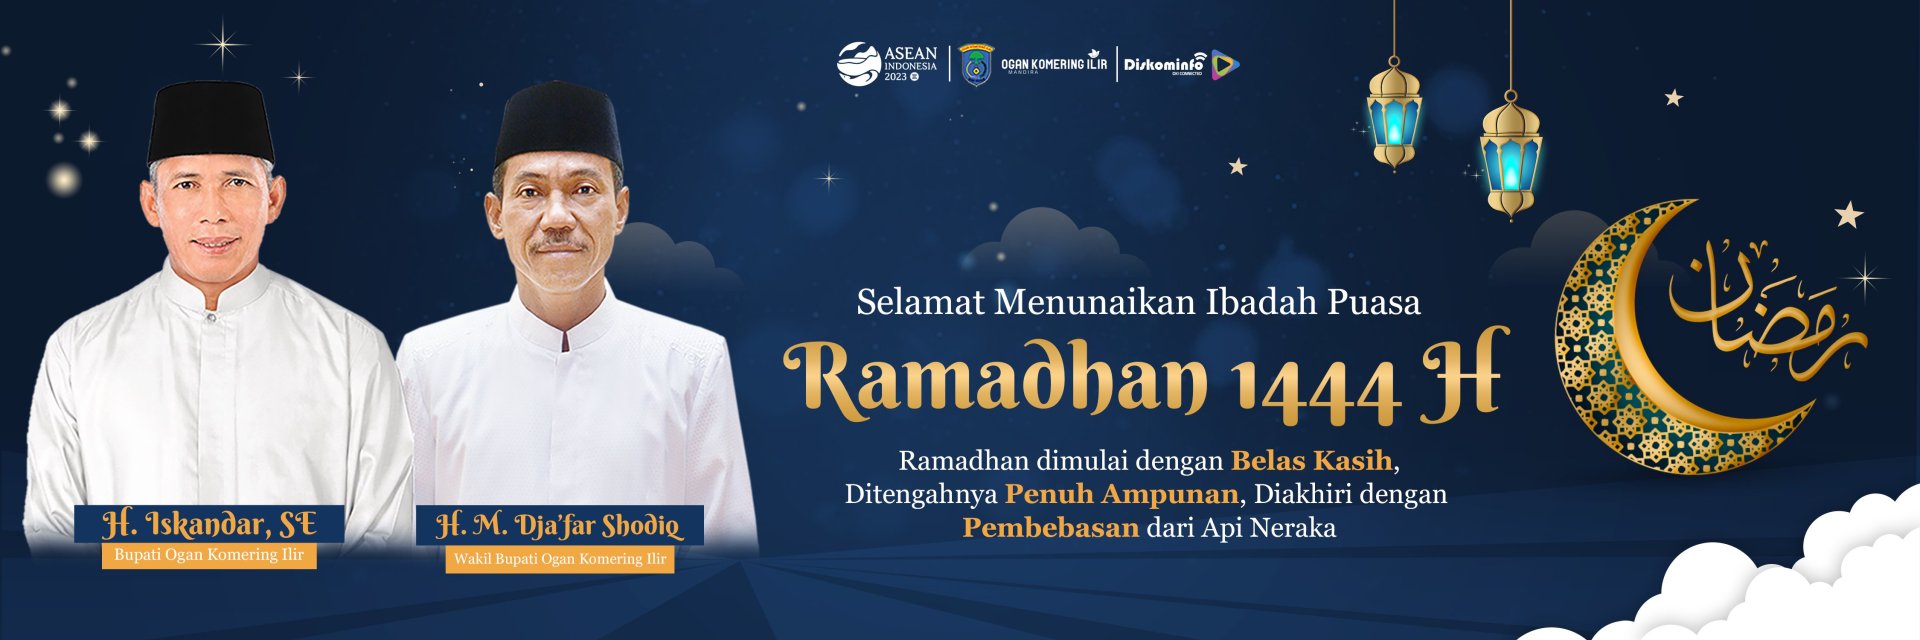 Pemkab OKI Ramadhan